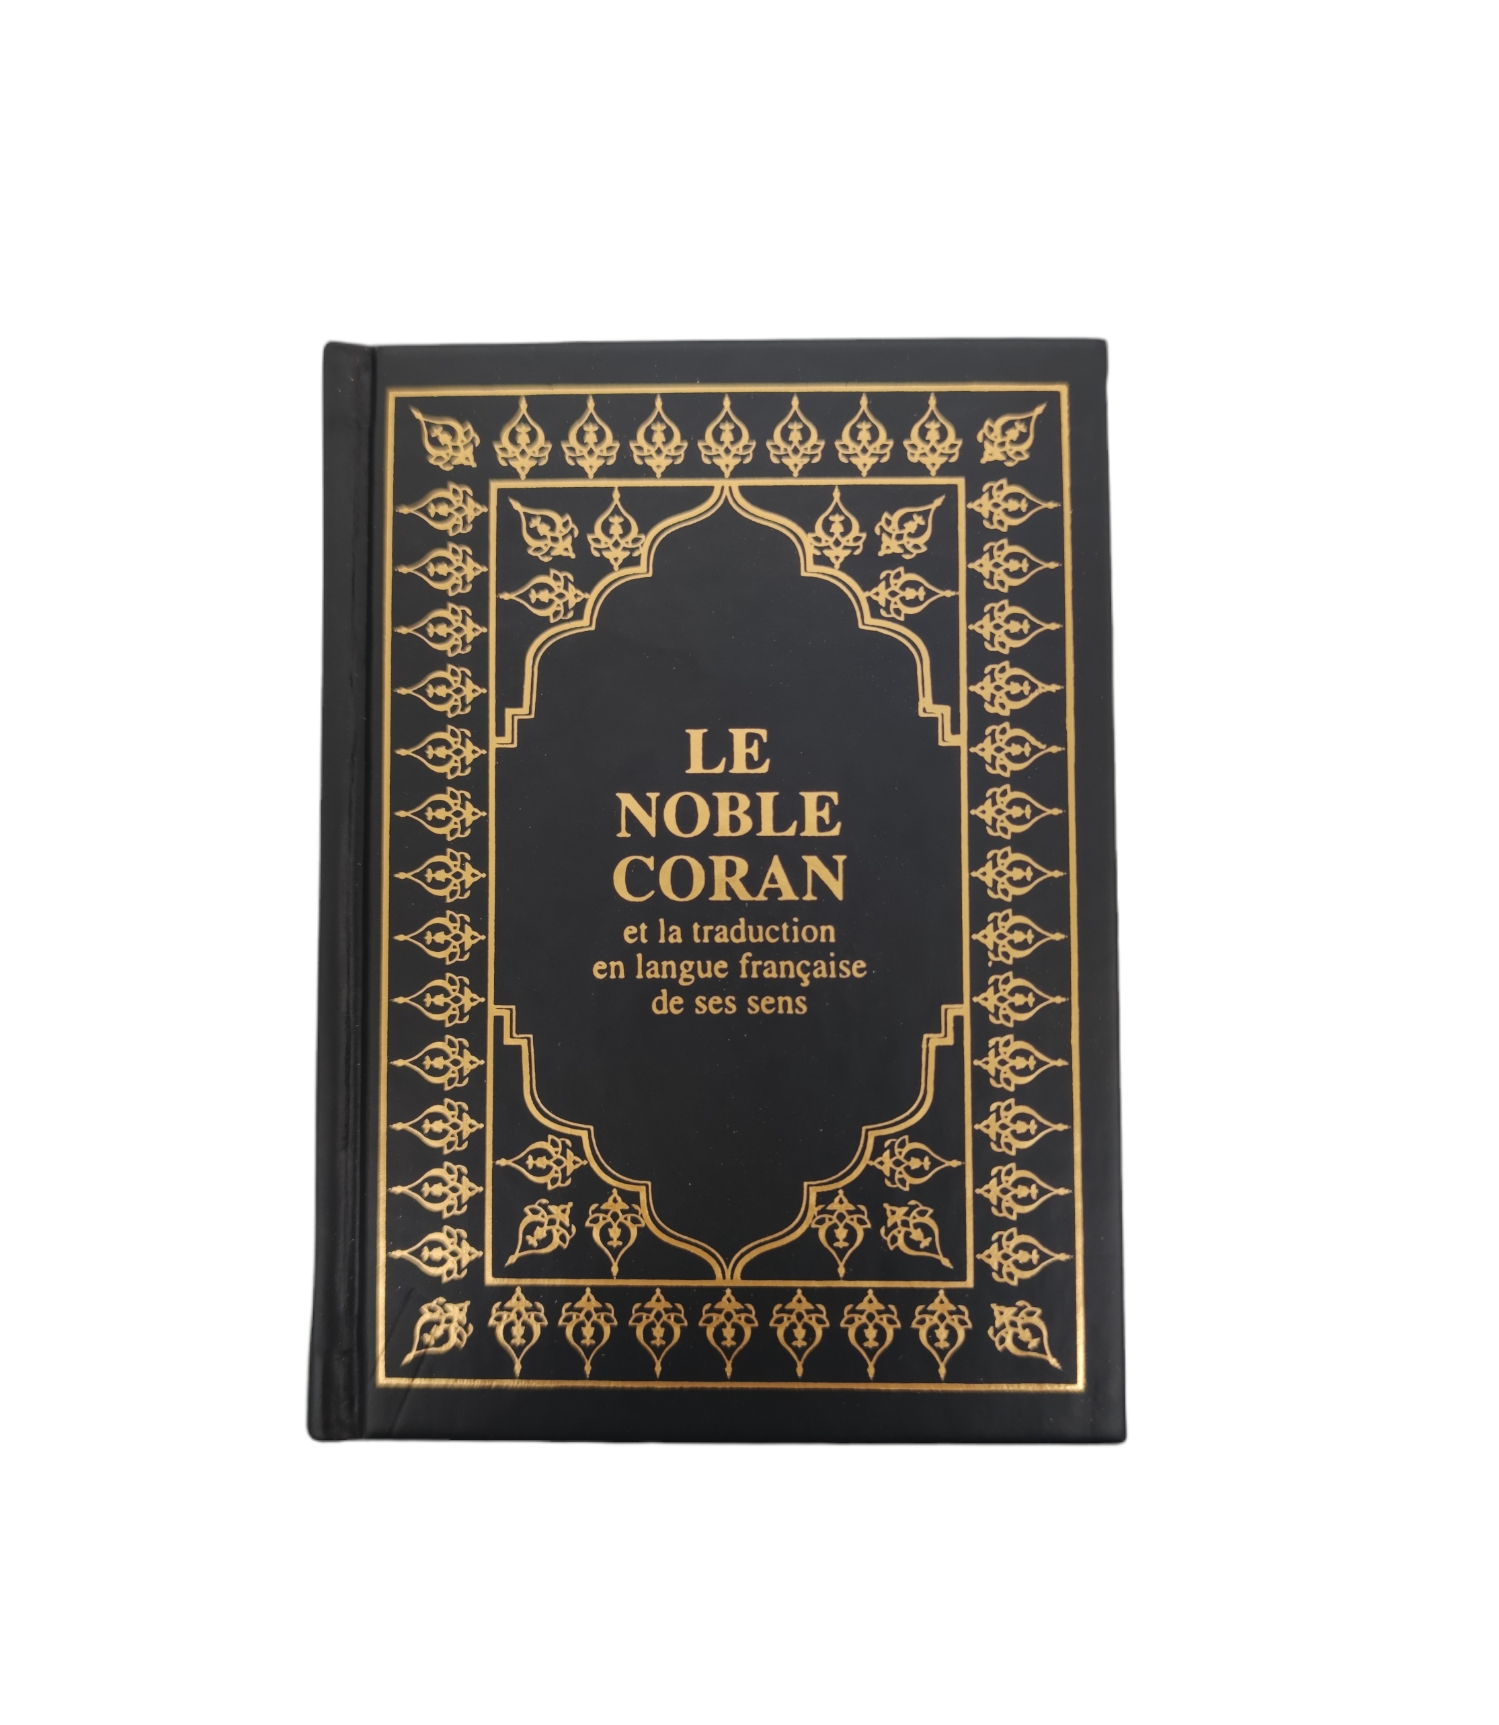 El Corán: El Sagrado Corán en español claro y fácil de leer (Paperback)